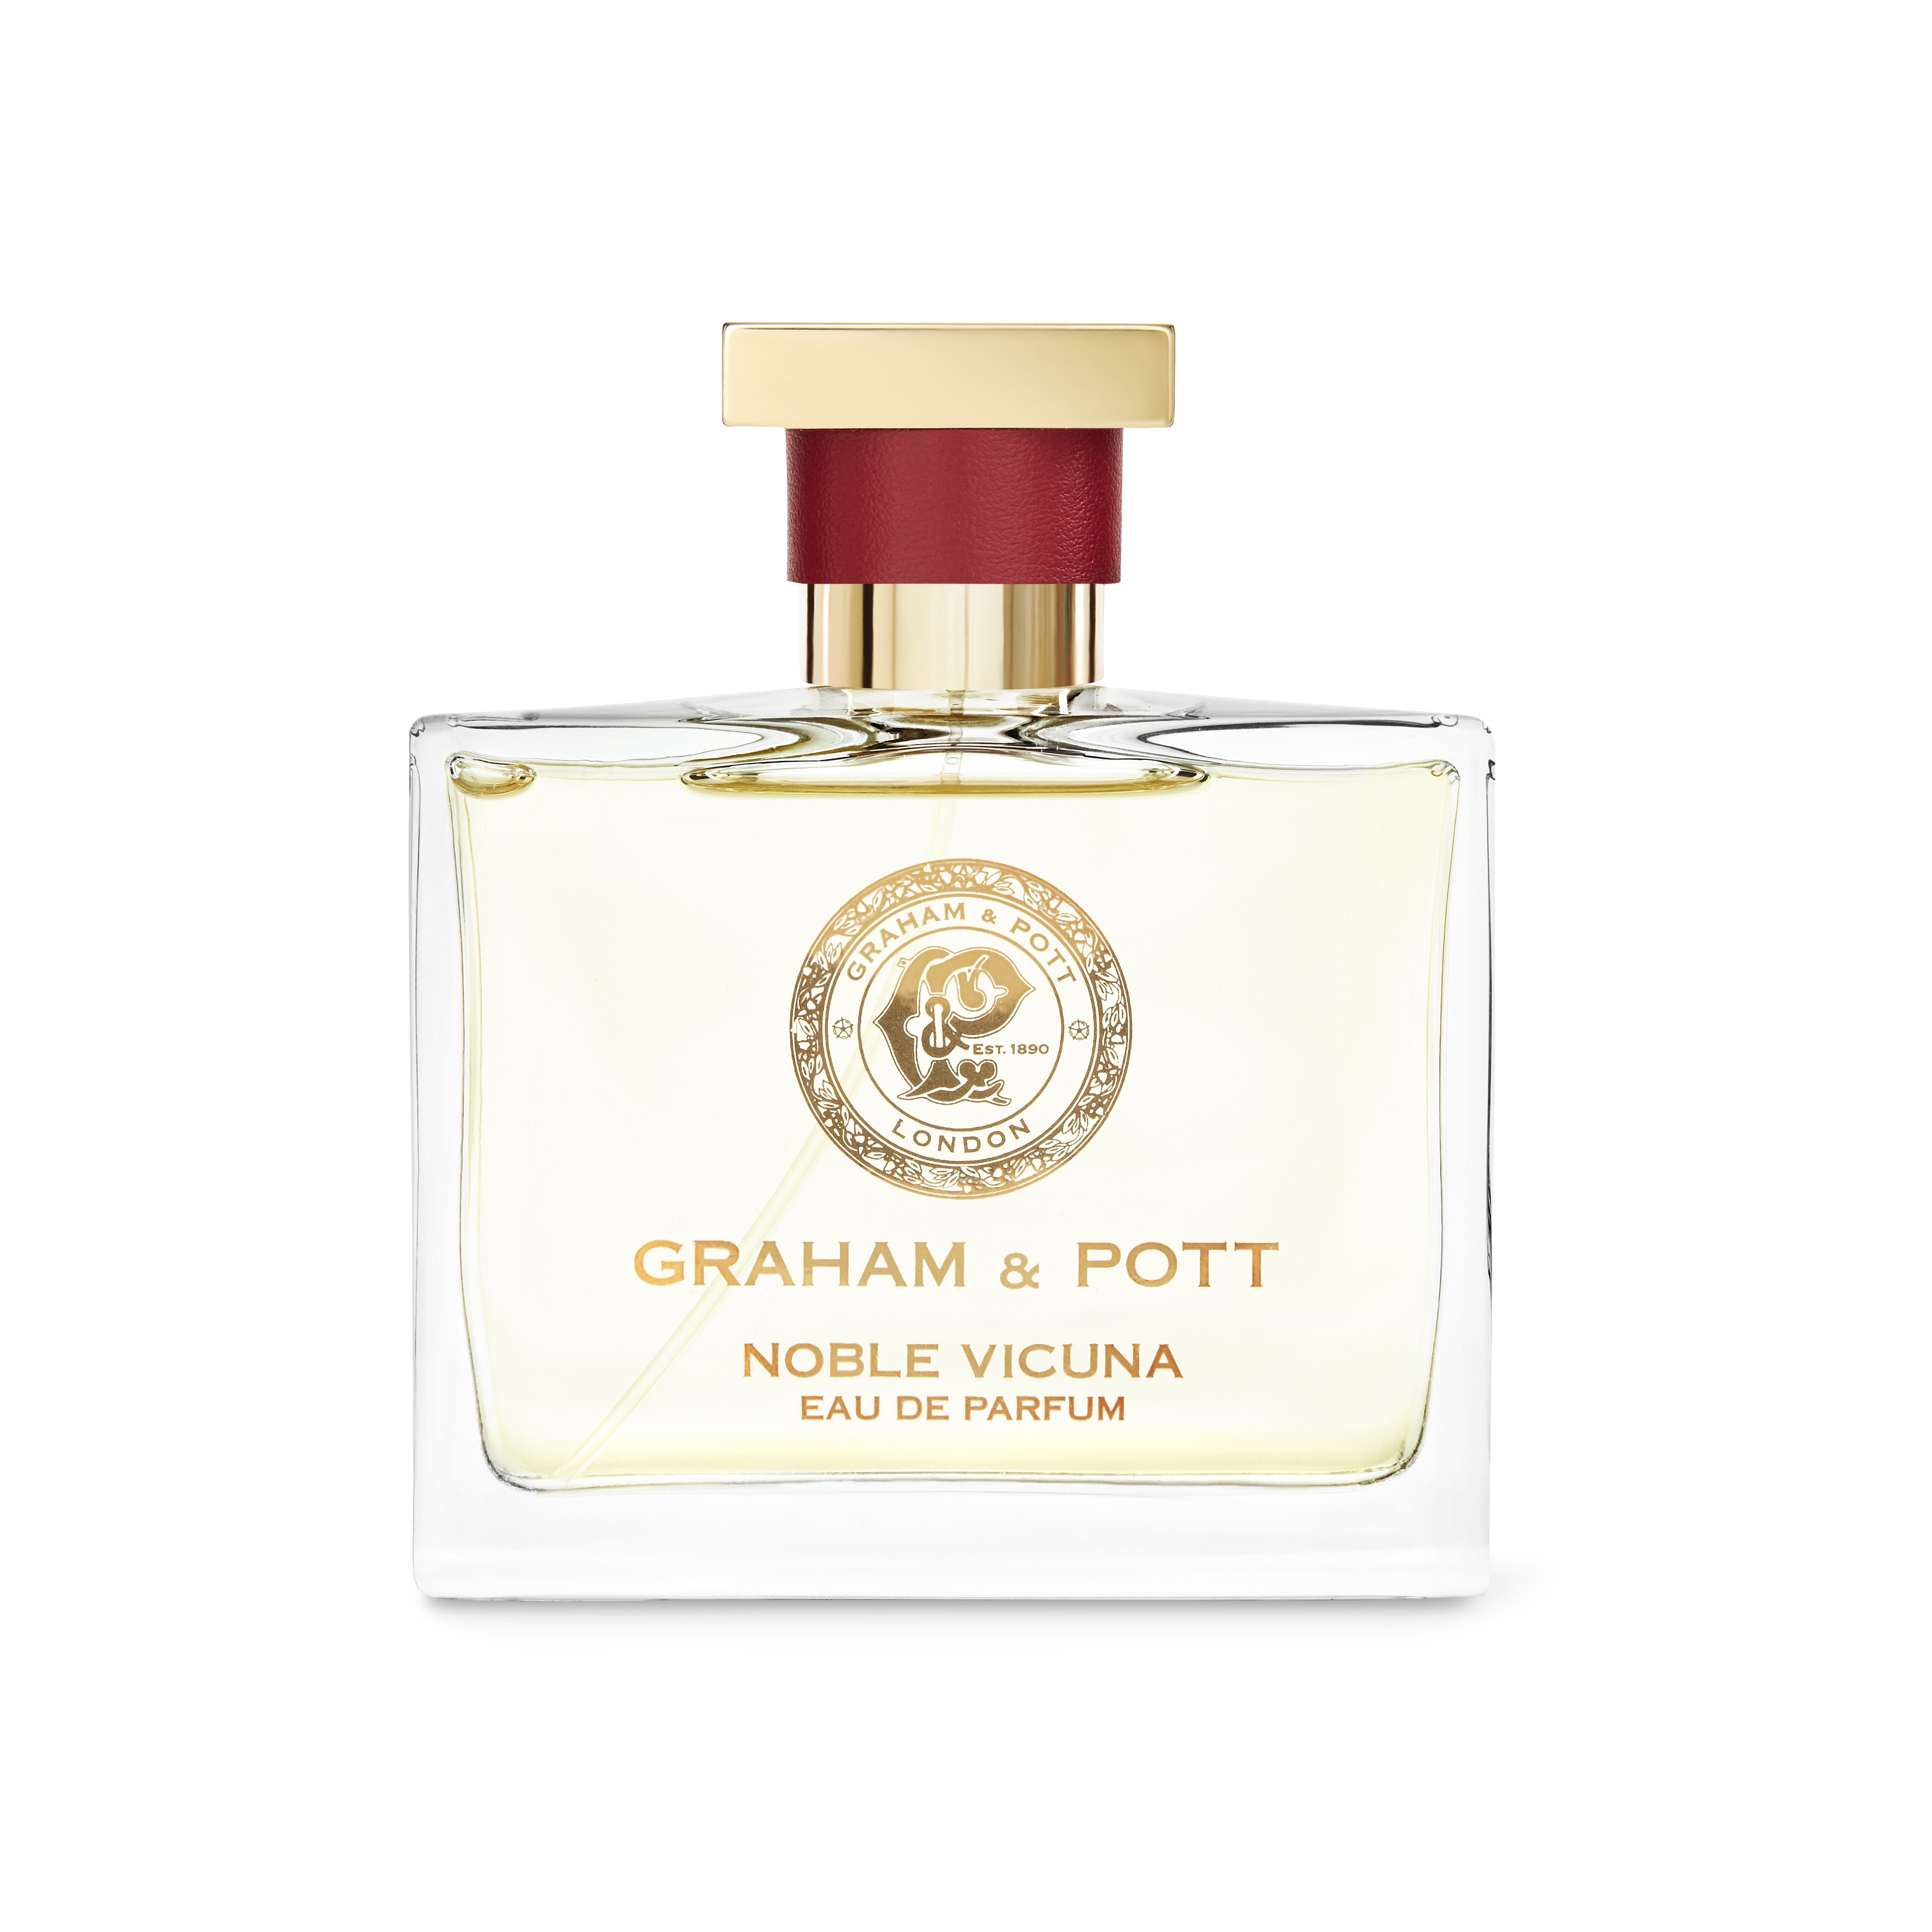 NOBLE VICUNA Eau De Parfum - GRAHAM & POTT